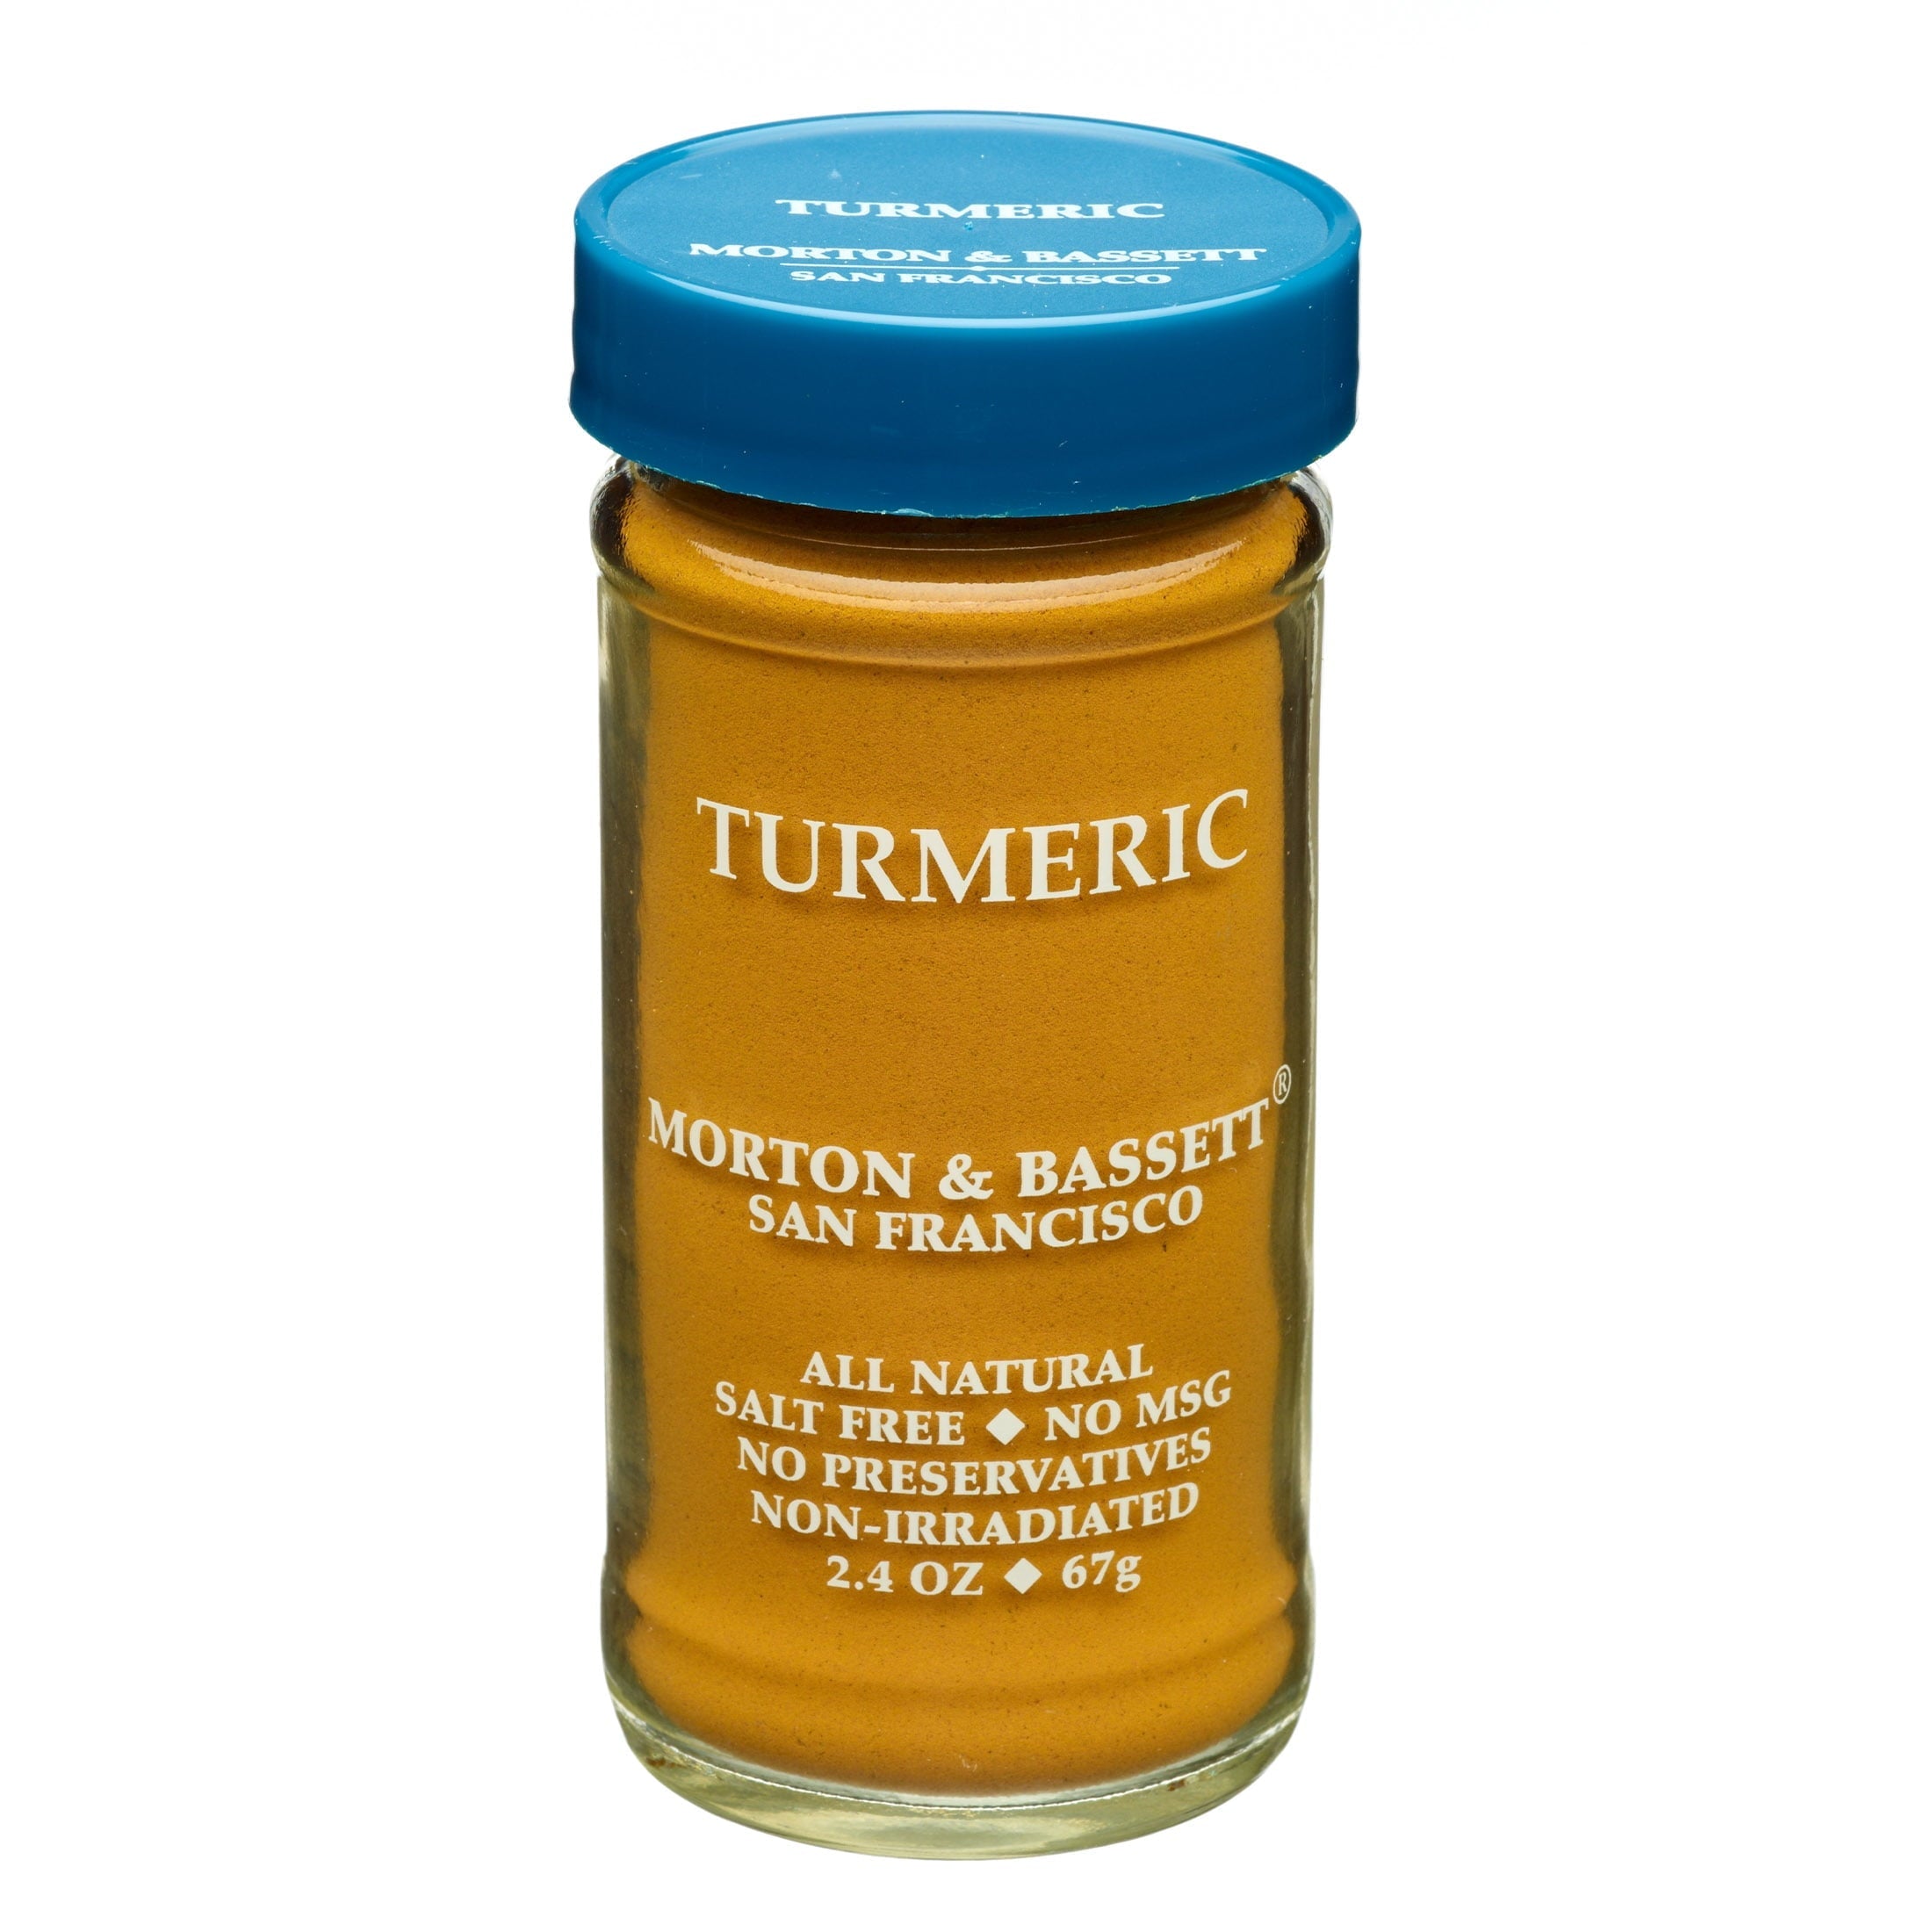 Morton & Bassett Turmeric Powder 2.4 Oz Jar